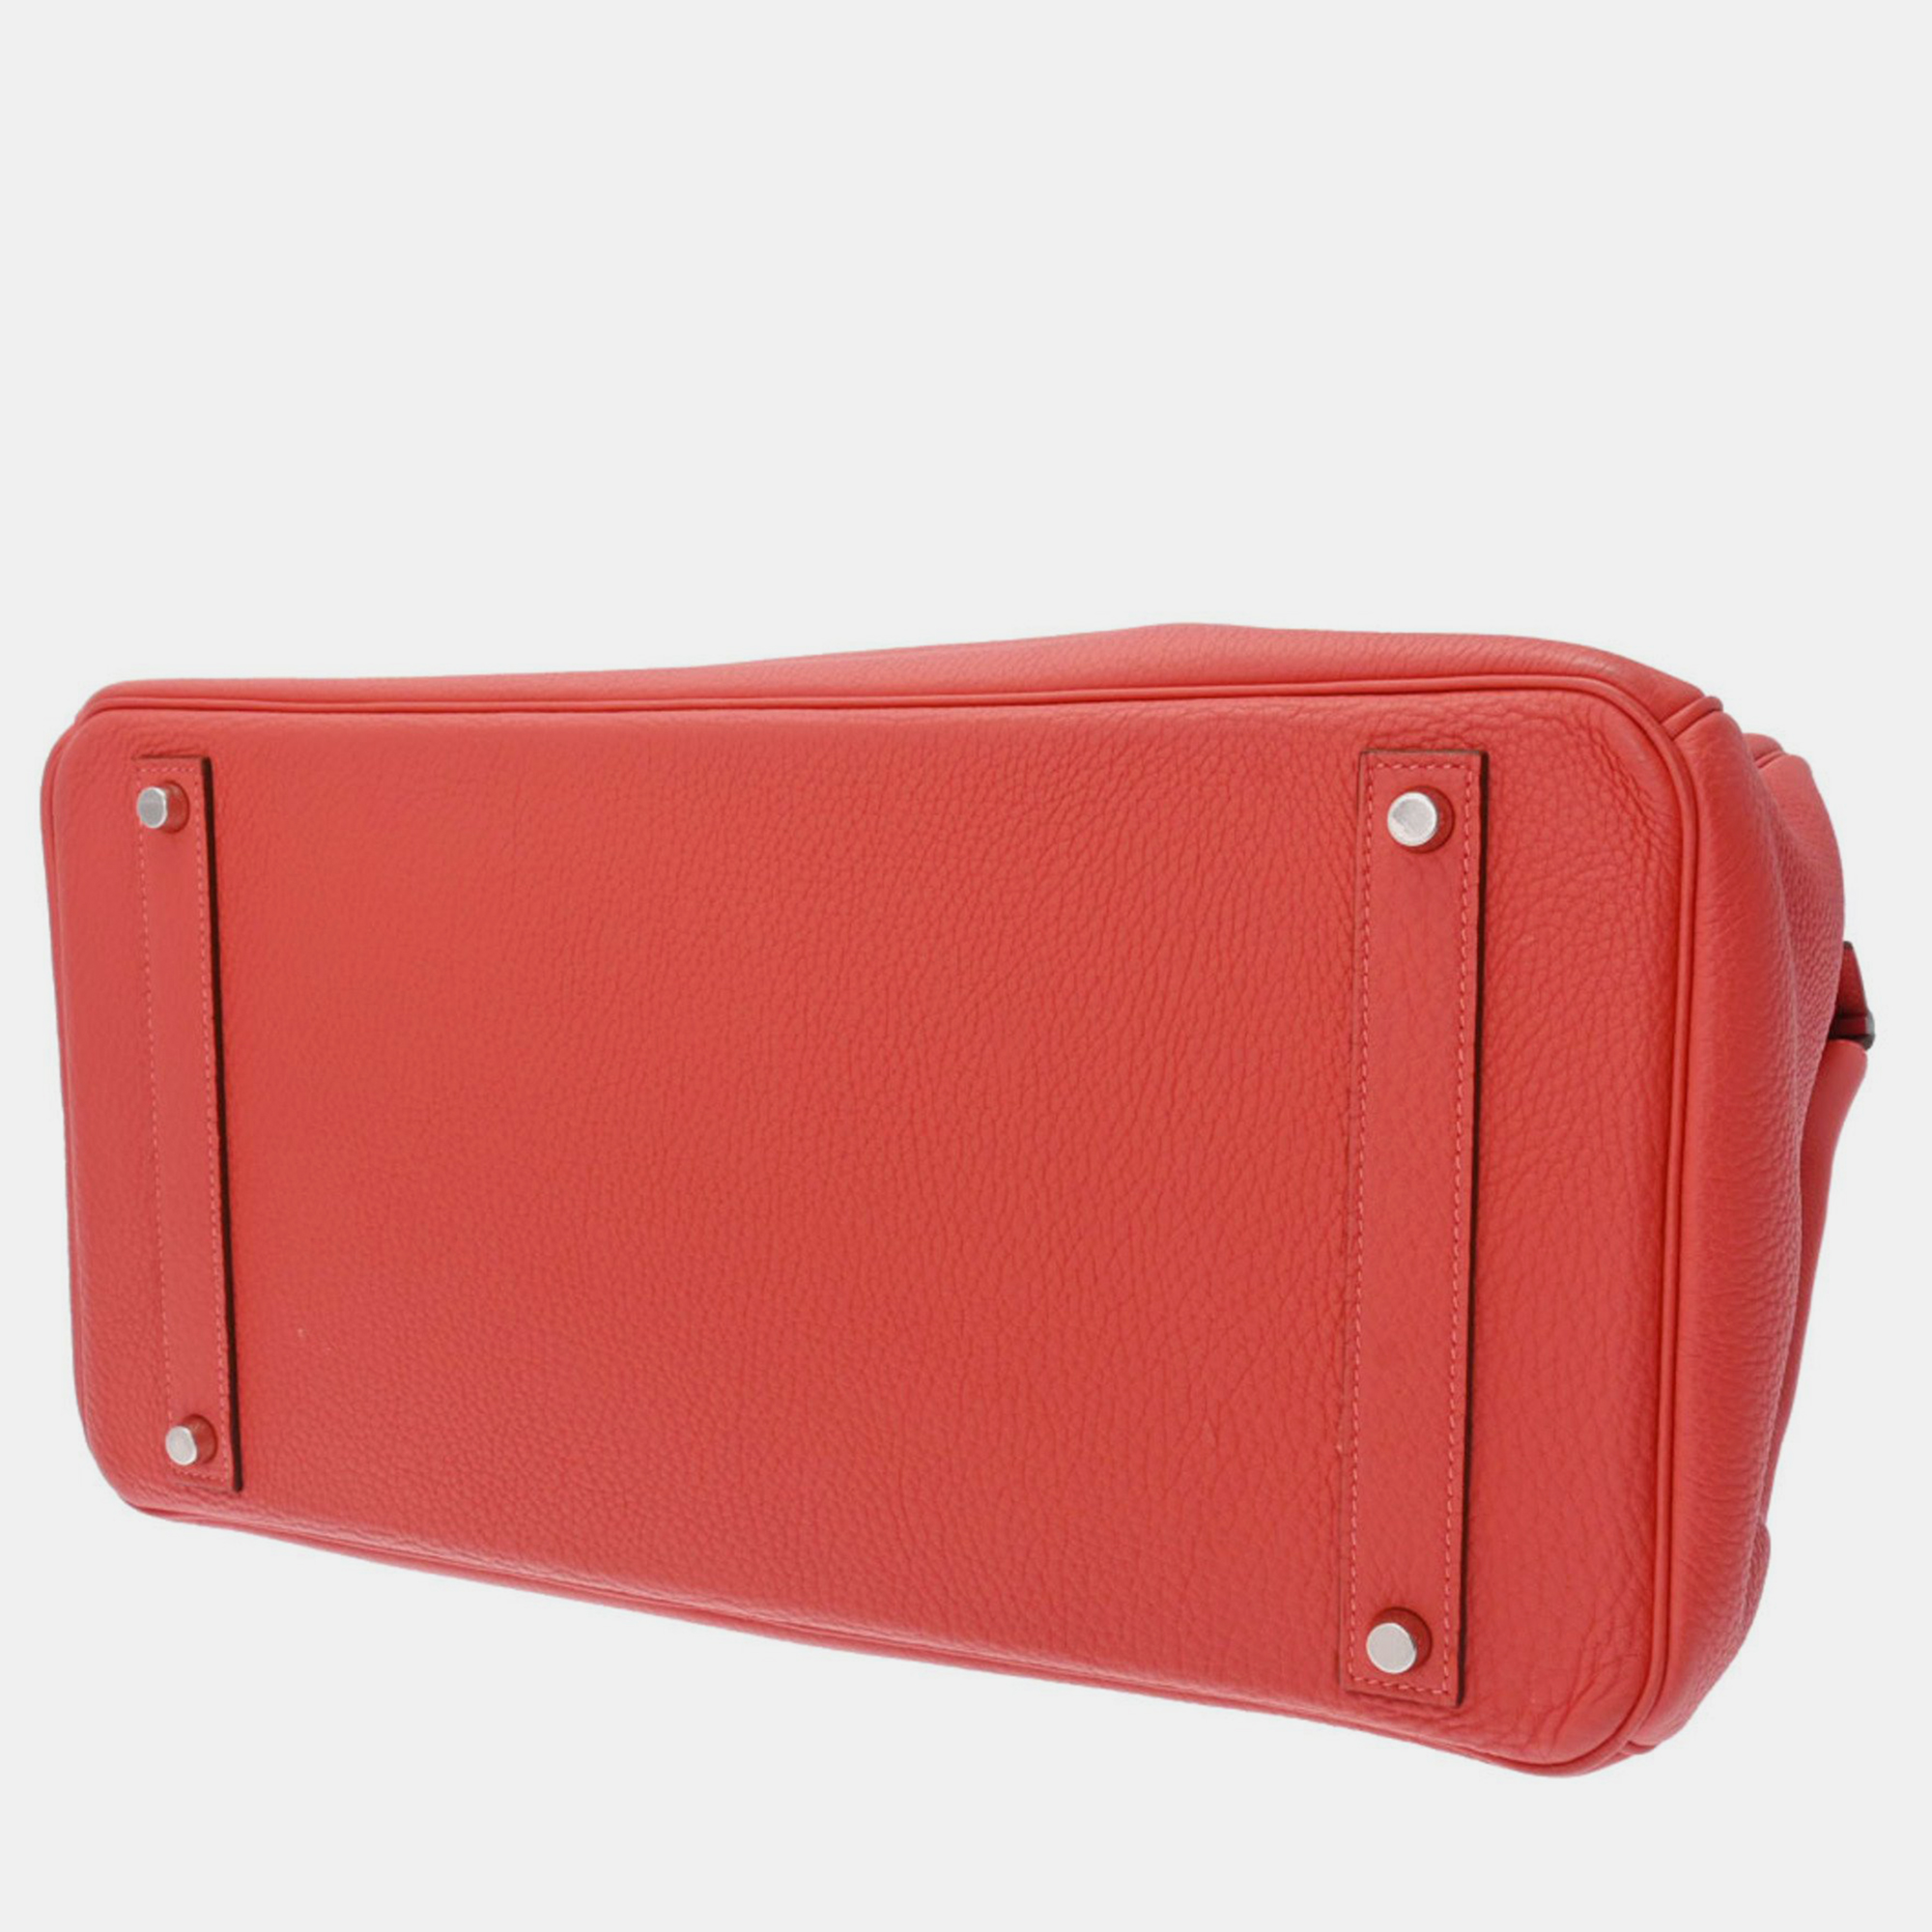 HERMES Birkin 40 Rouge Pivoine Palladium Hardware R Stamp (around 2014) Unisex Togo Handbag